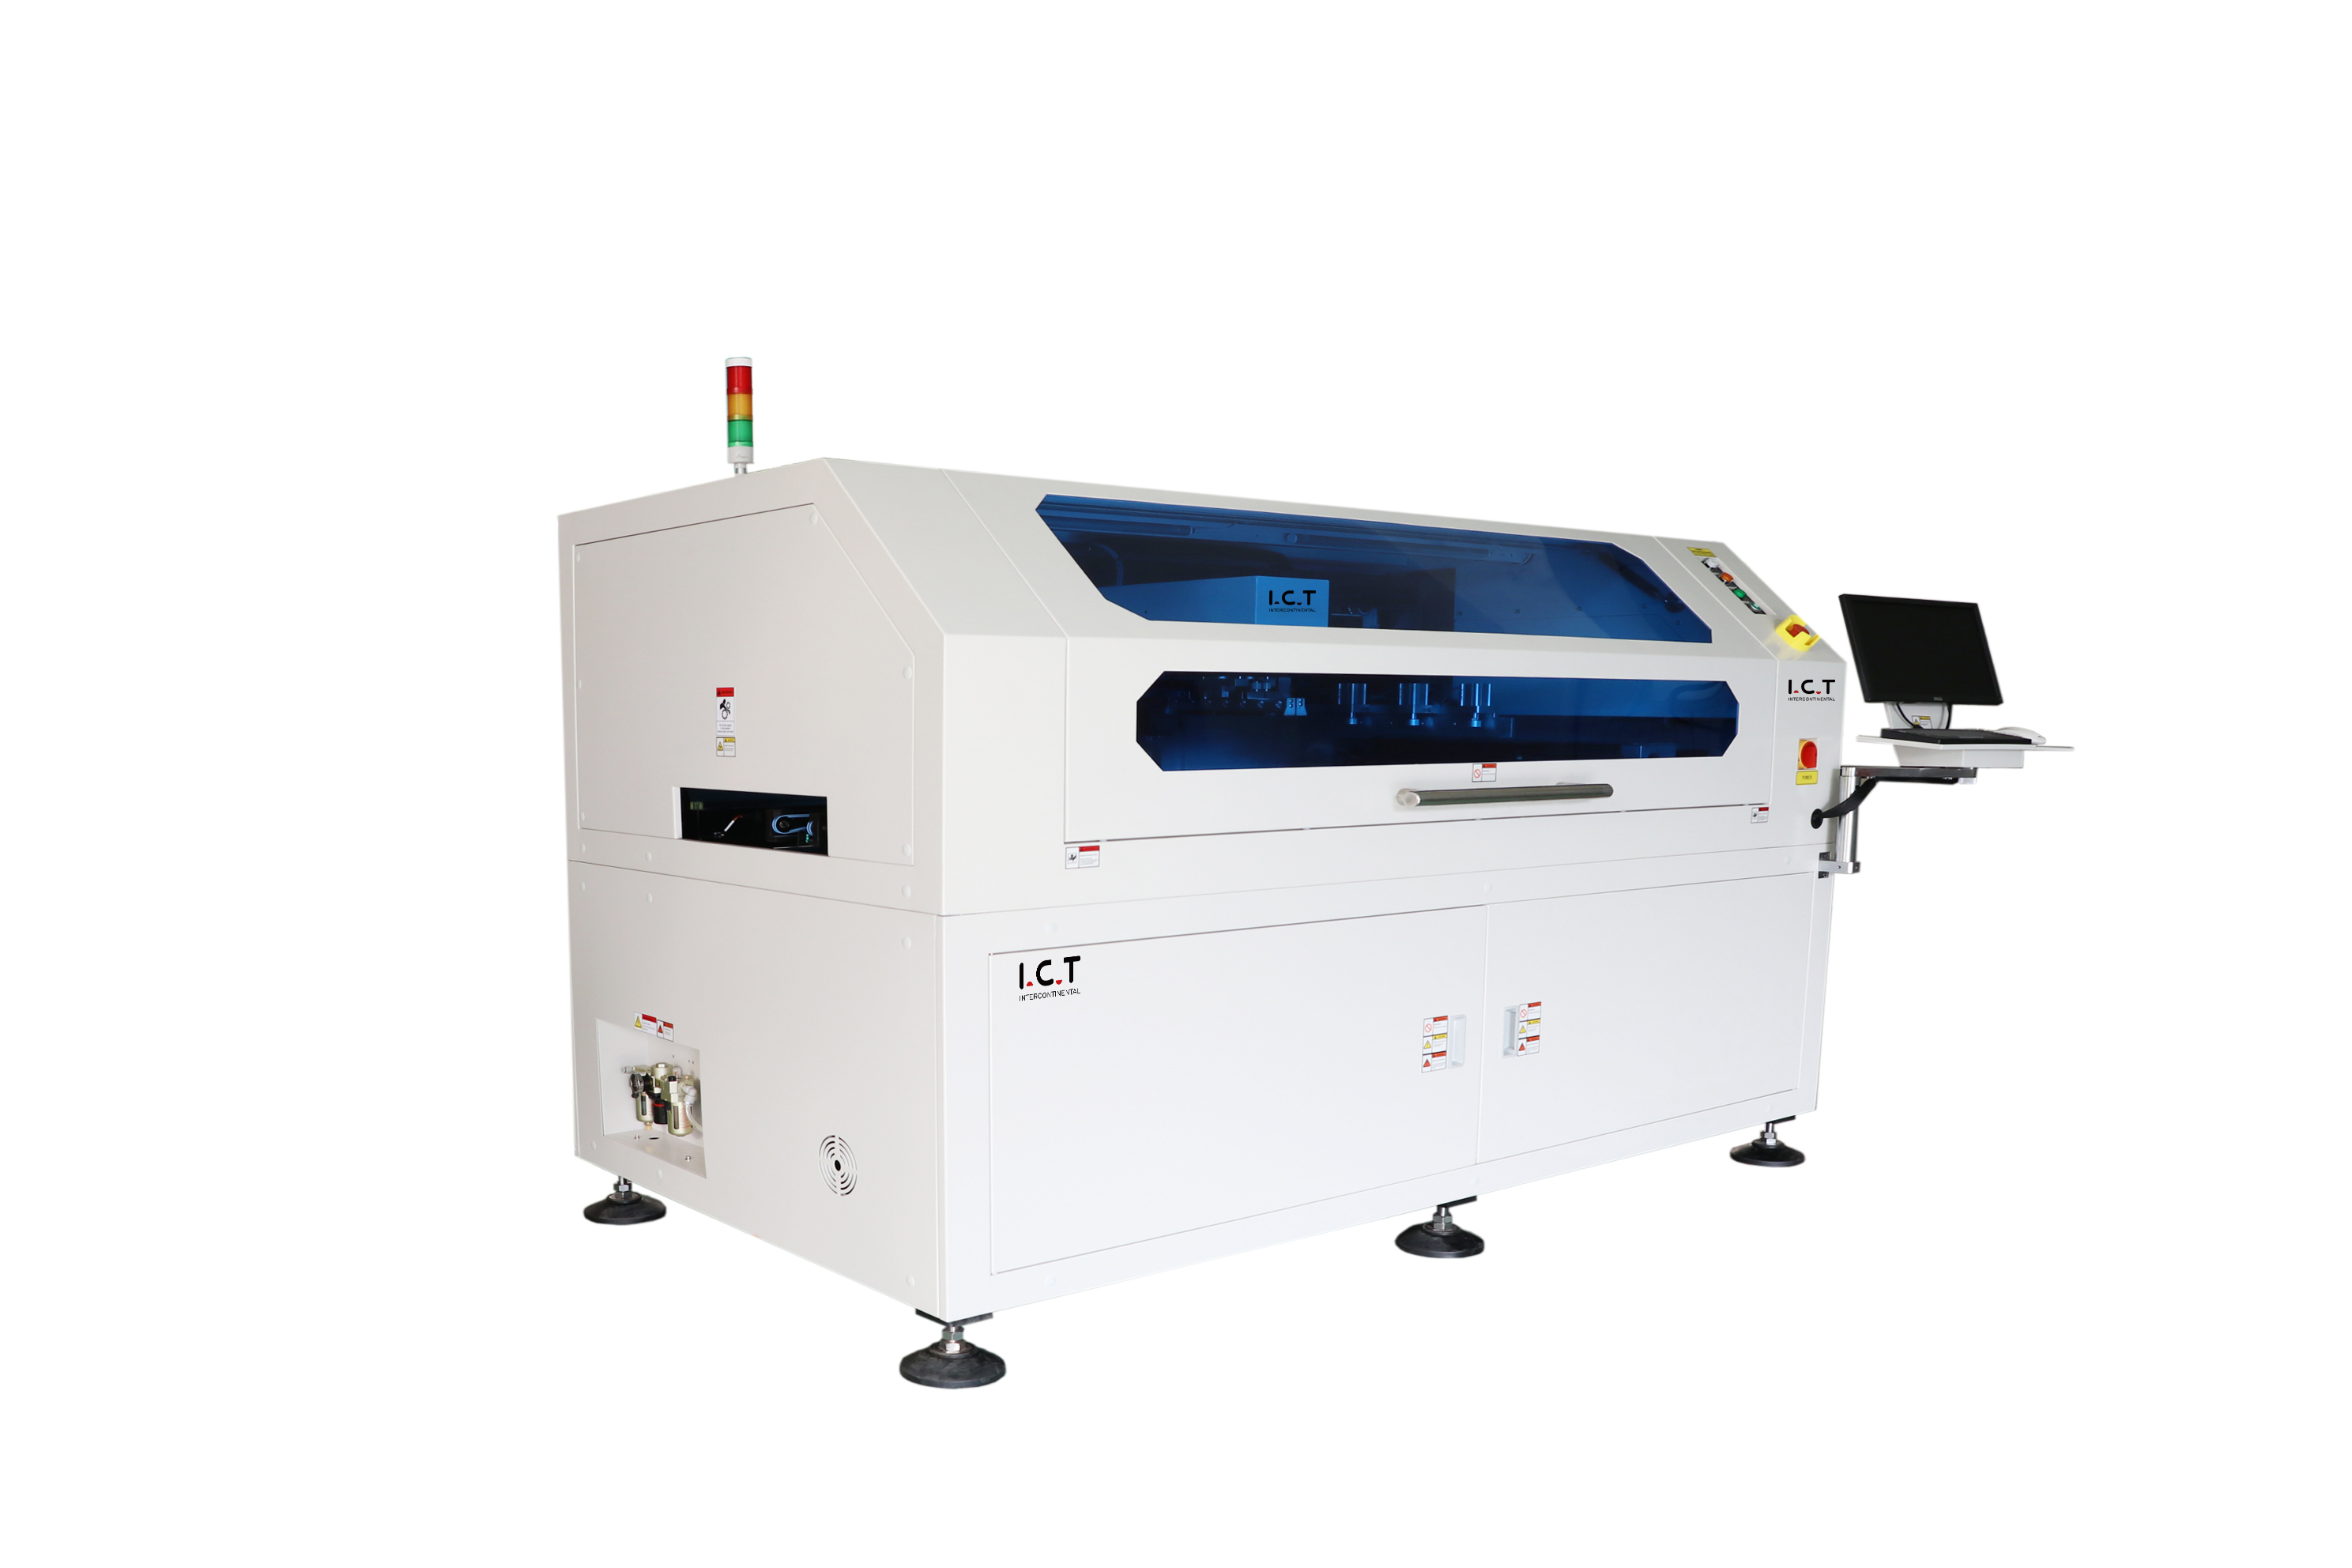  I.C.T-1500 丨 SMT automatisch PCB Schablone Druckermaschine